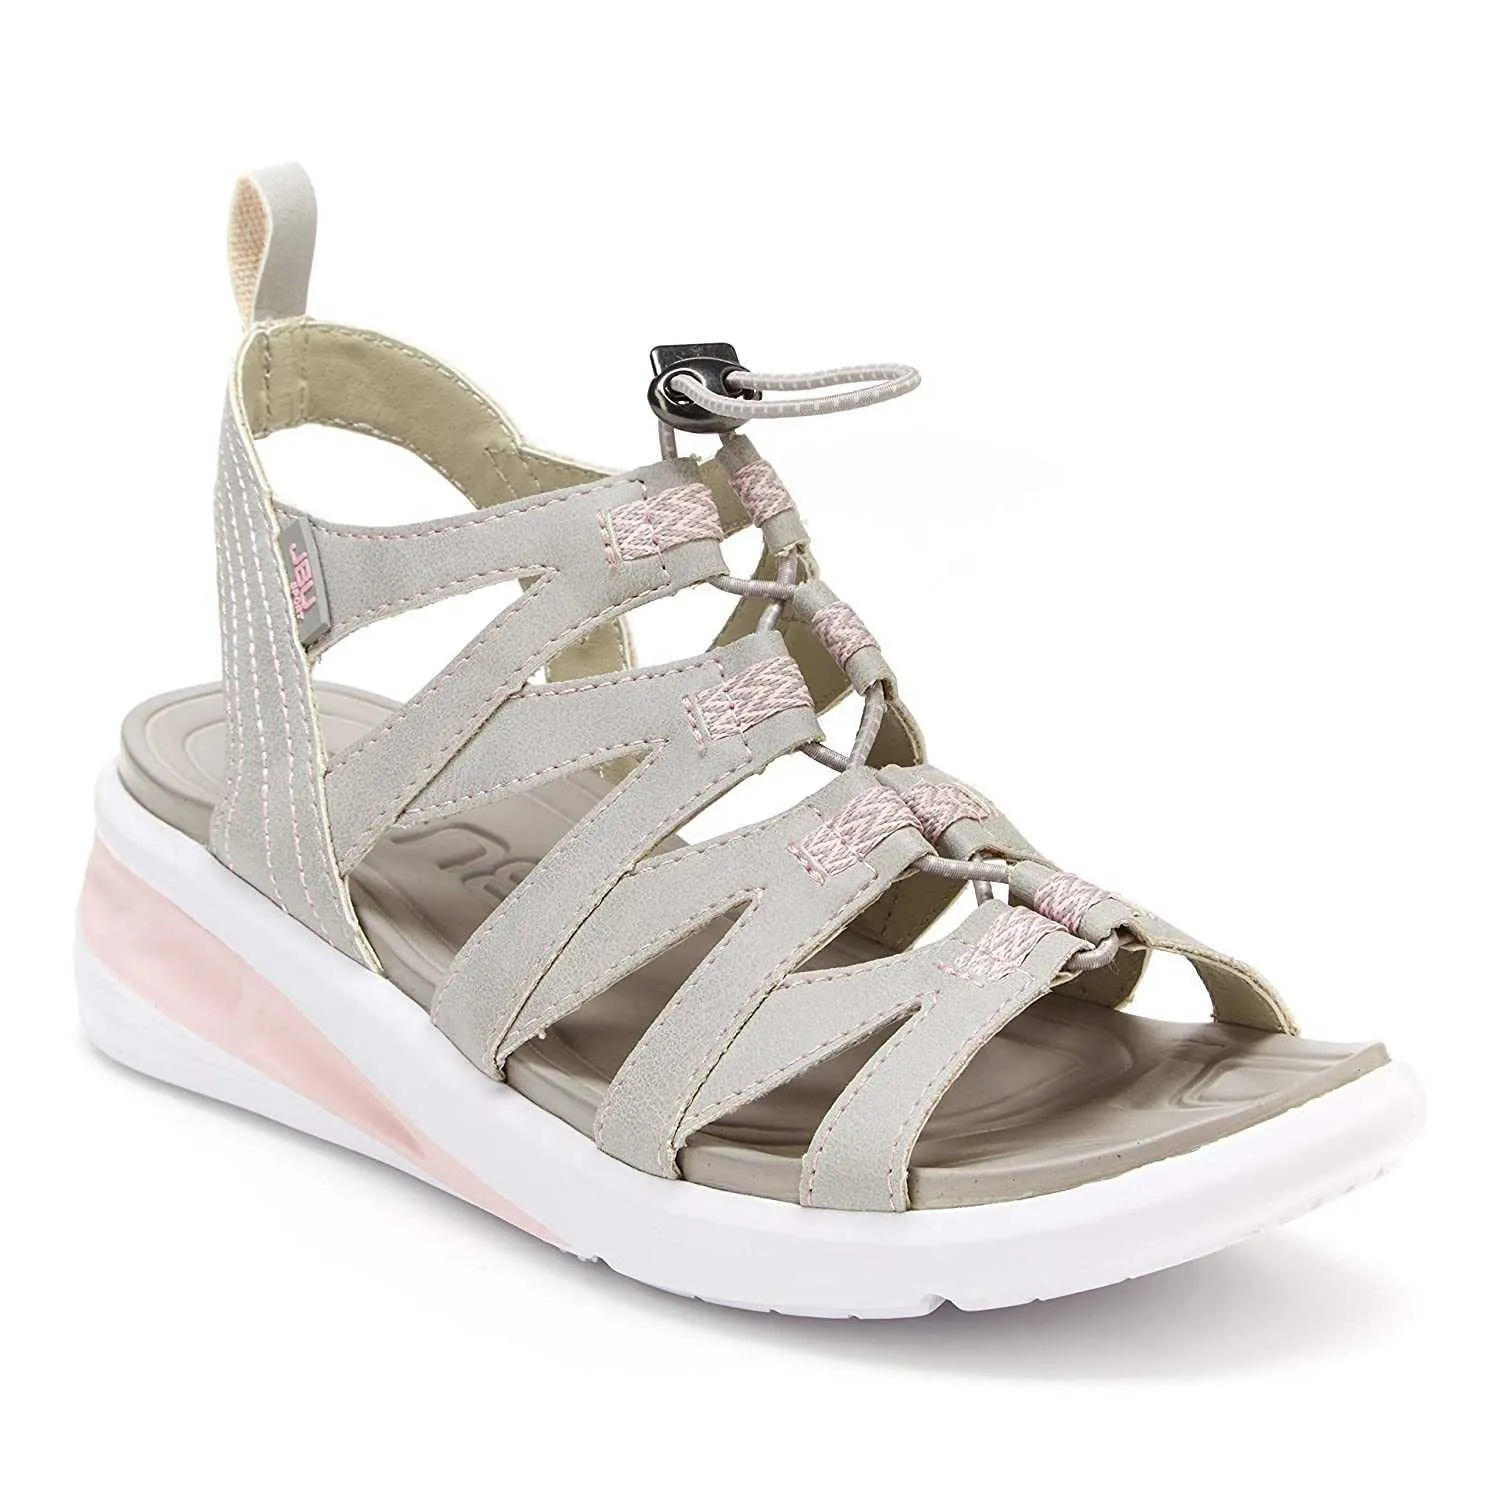 Yeni Sandalet Katı Renk Yuvarlak Toe Yumuşak Kama İpli Bayanlar Sandalias Yaz Moda Açık Plaj Ayakkabı Kadın Y0714